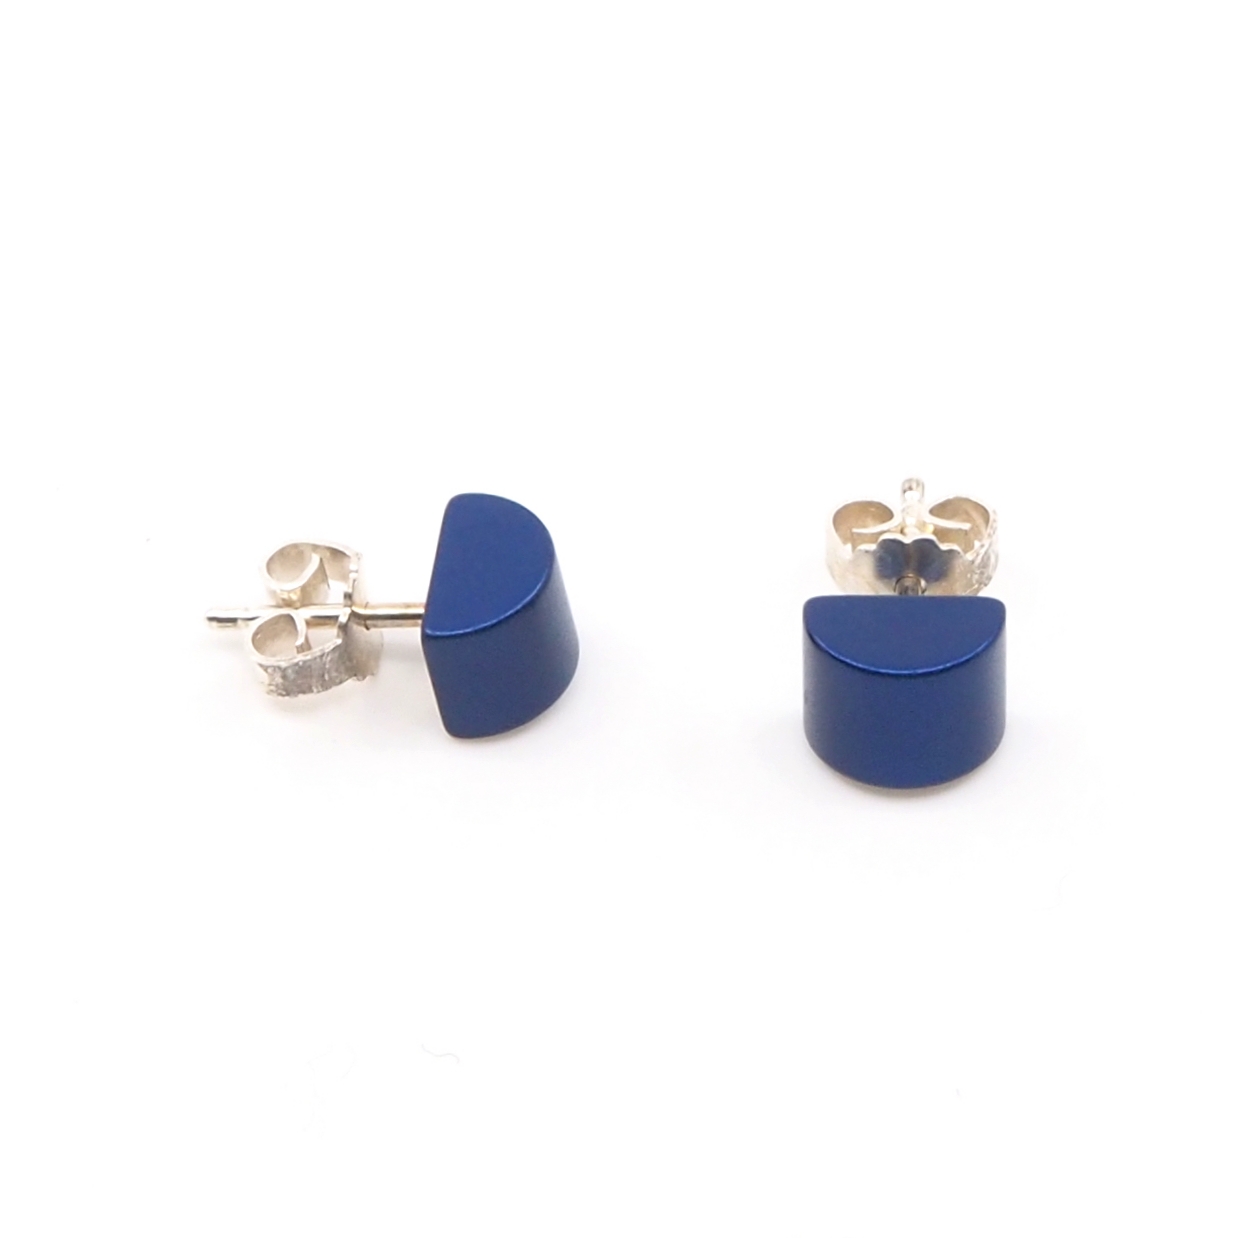 Otracosa sieraden blauw oorbellen. Donkerblauwe oorbellen sieraden